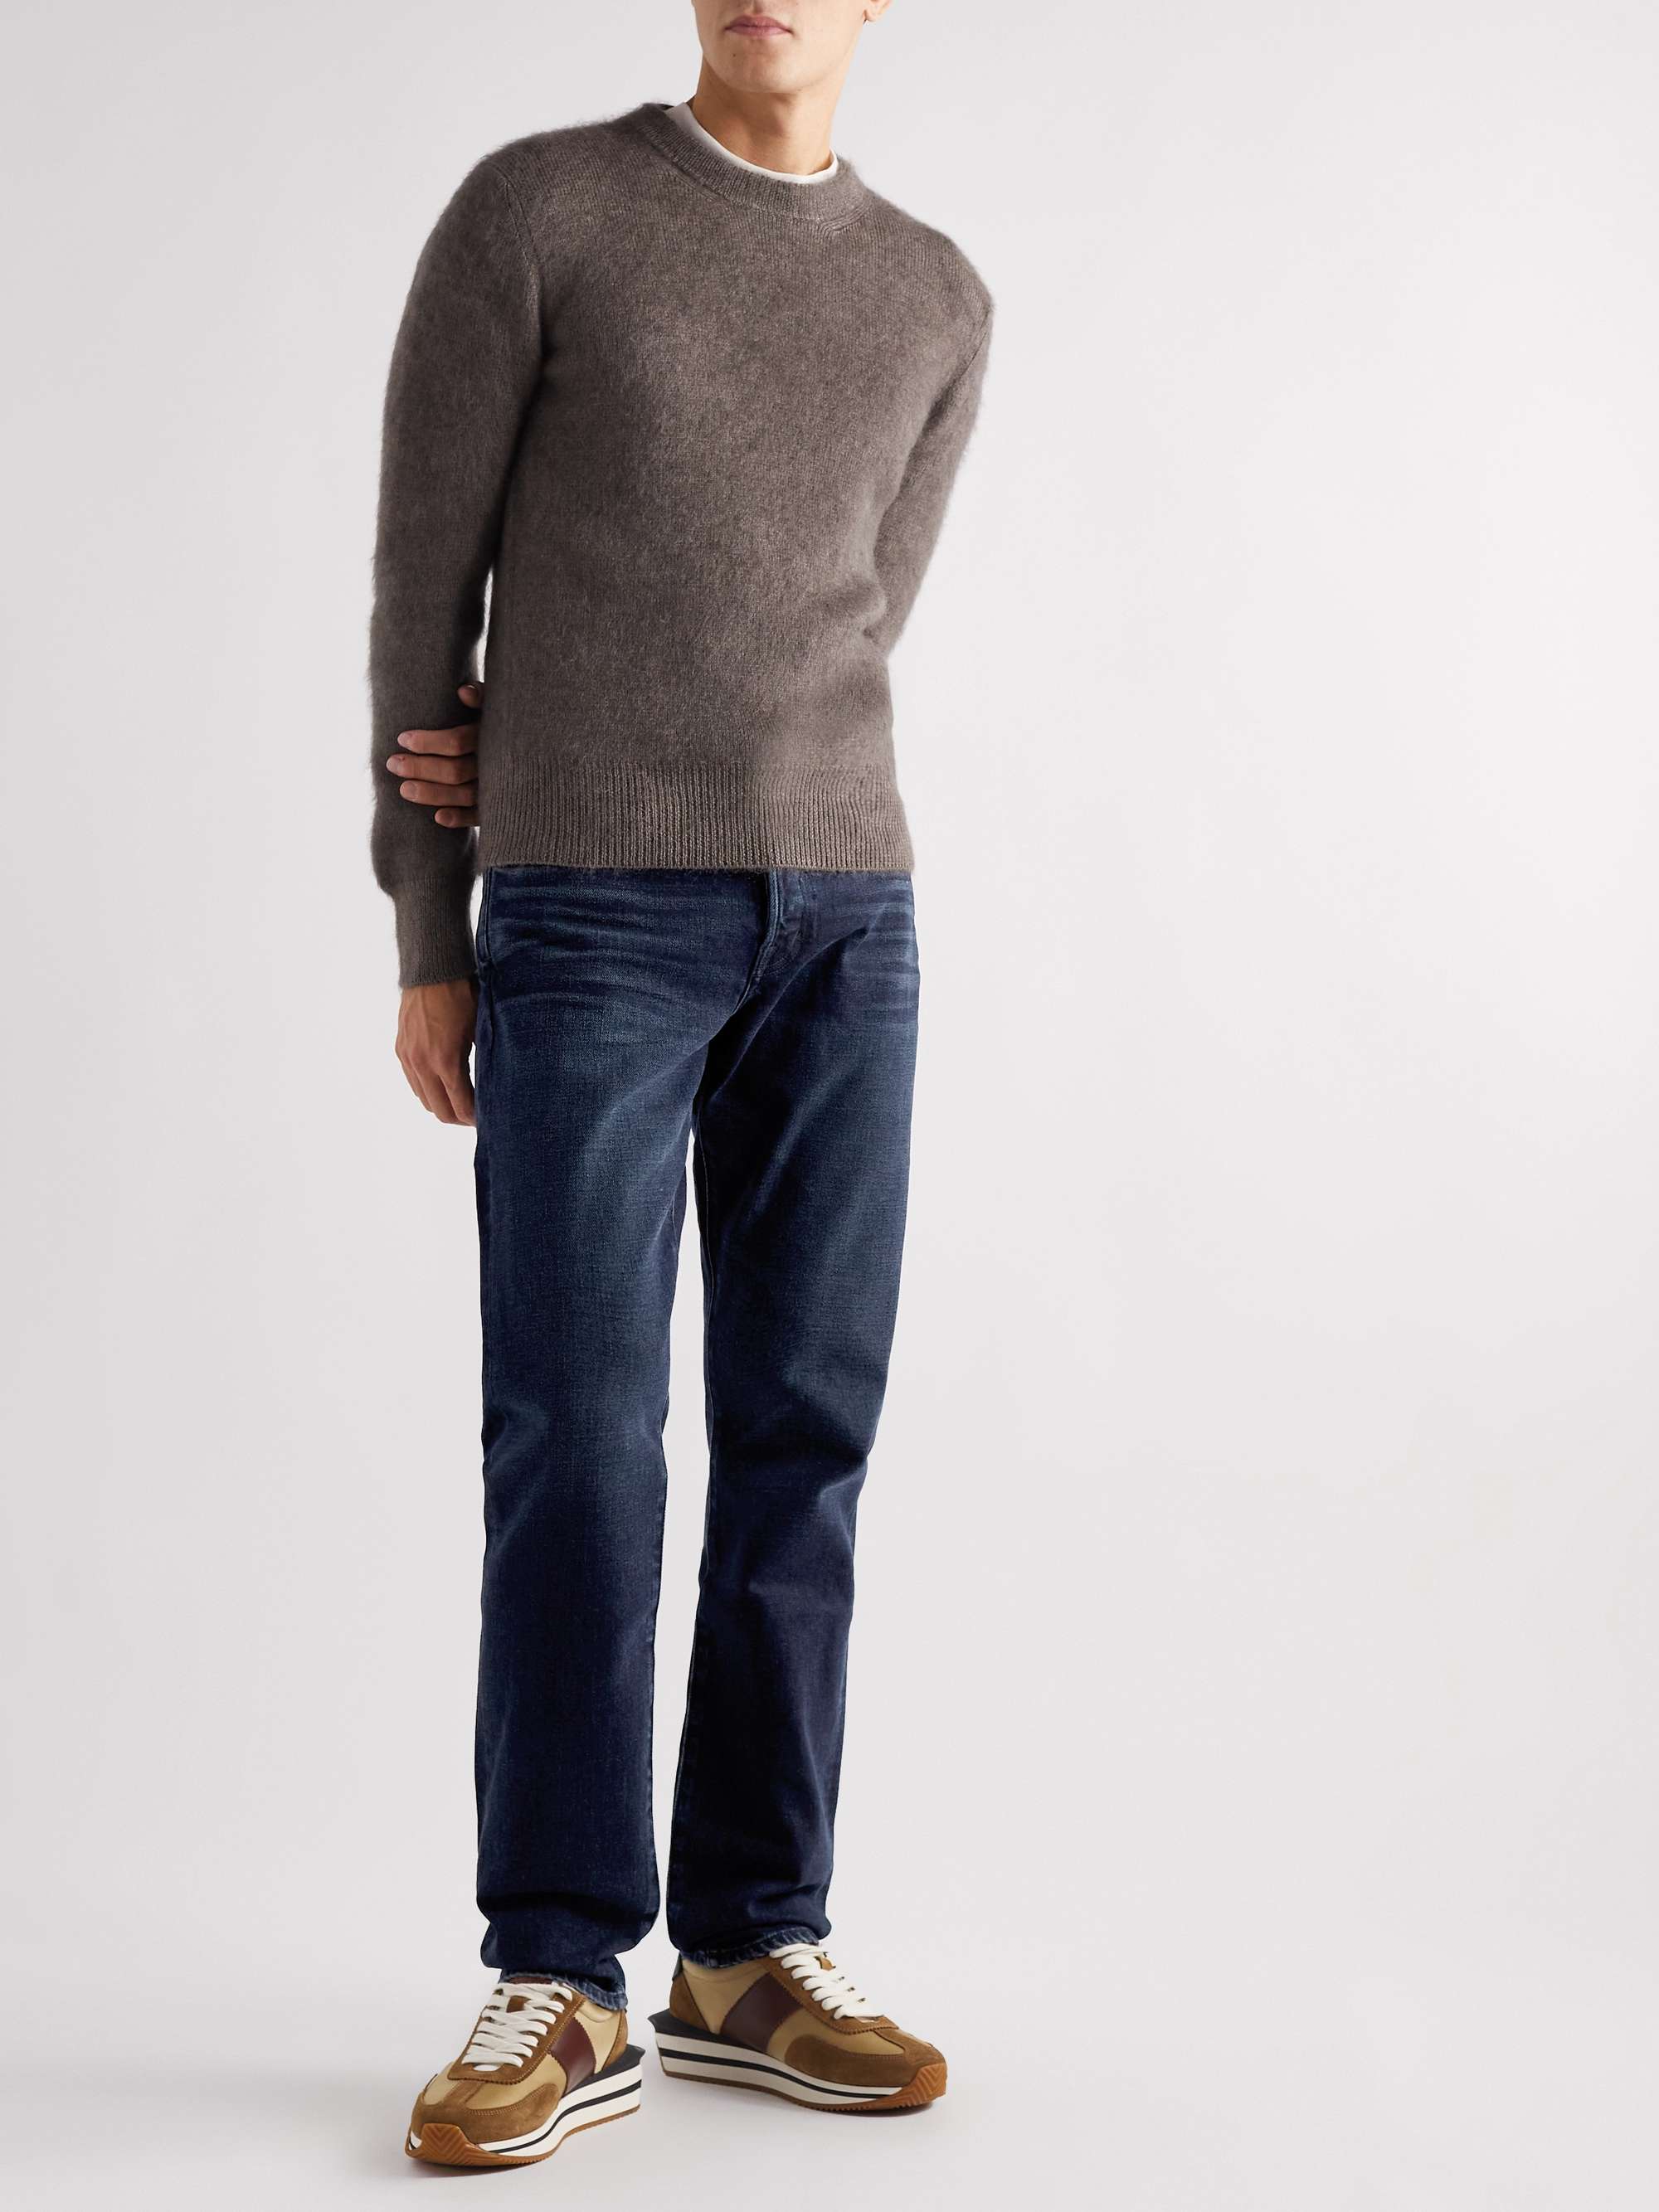 TOM FORD Straight-Leg Garment-Dyed Selvedge Jeans